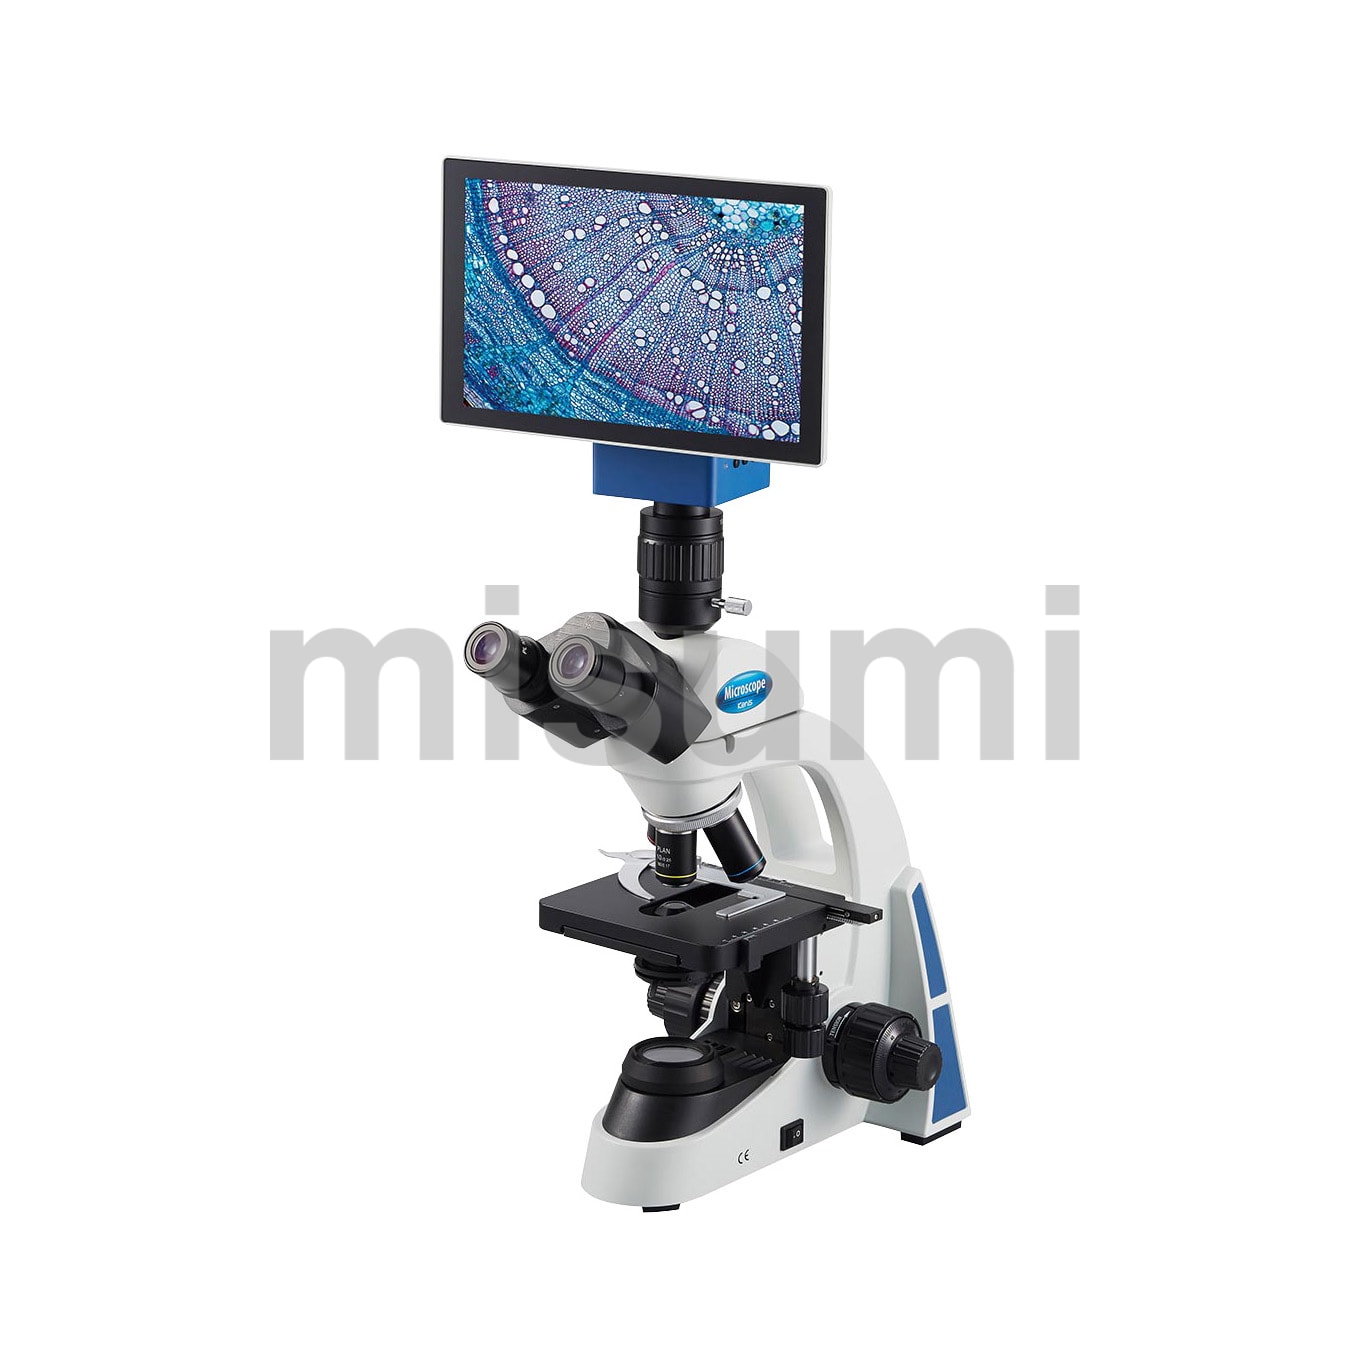 タブレット型生物顕微鏡 ケニス MISUMI(ミスミ)